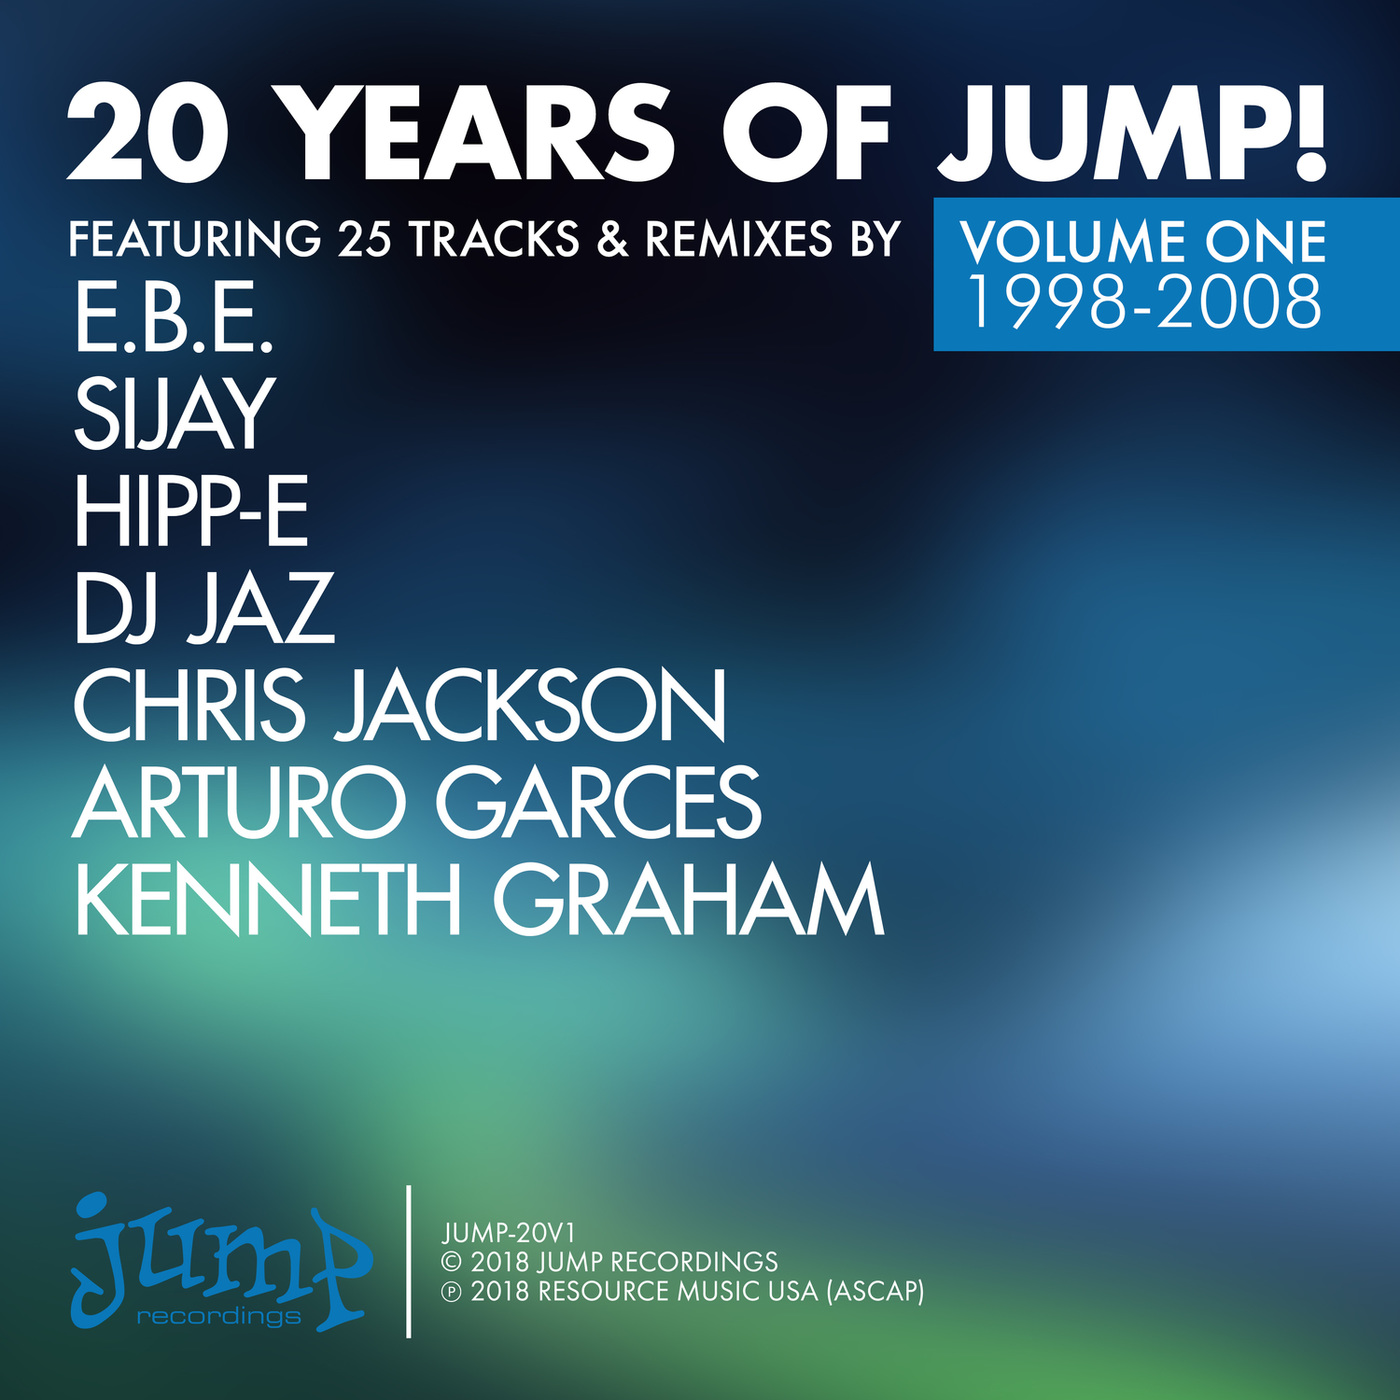 VA - 20 Years of Jump!, Vol. 1 / Jump Recordings